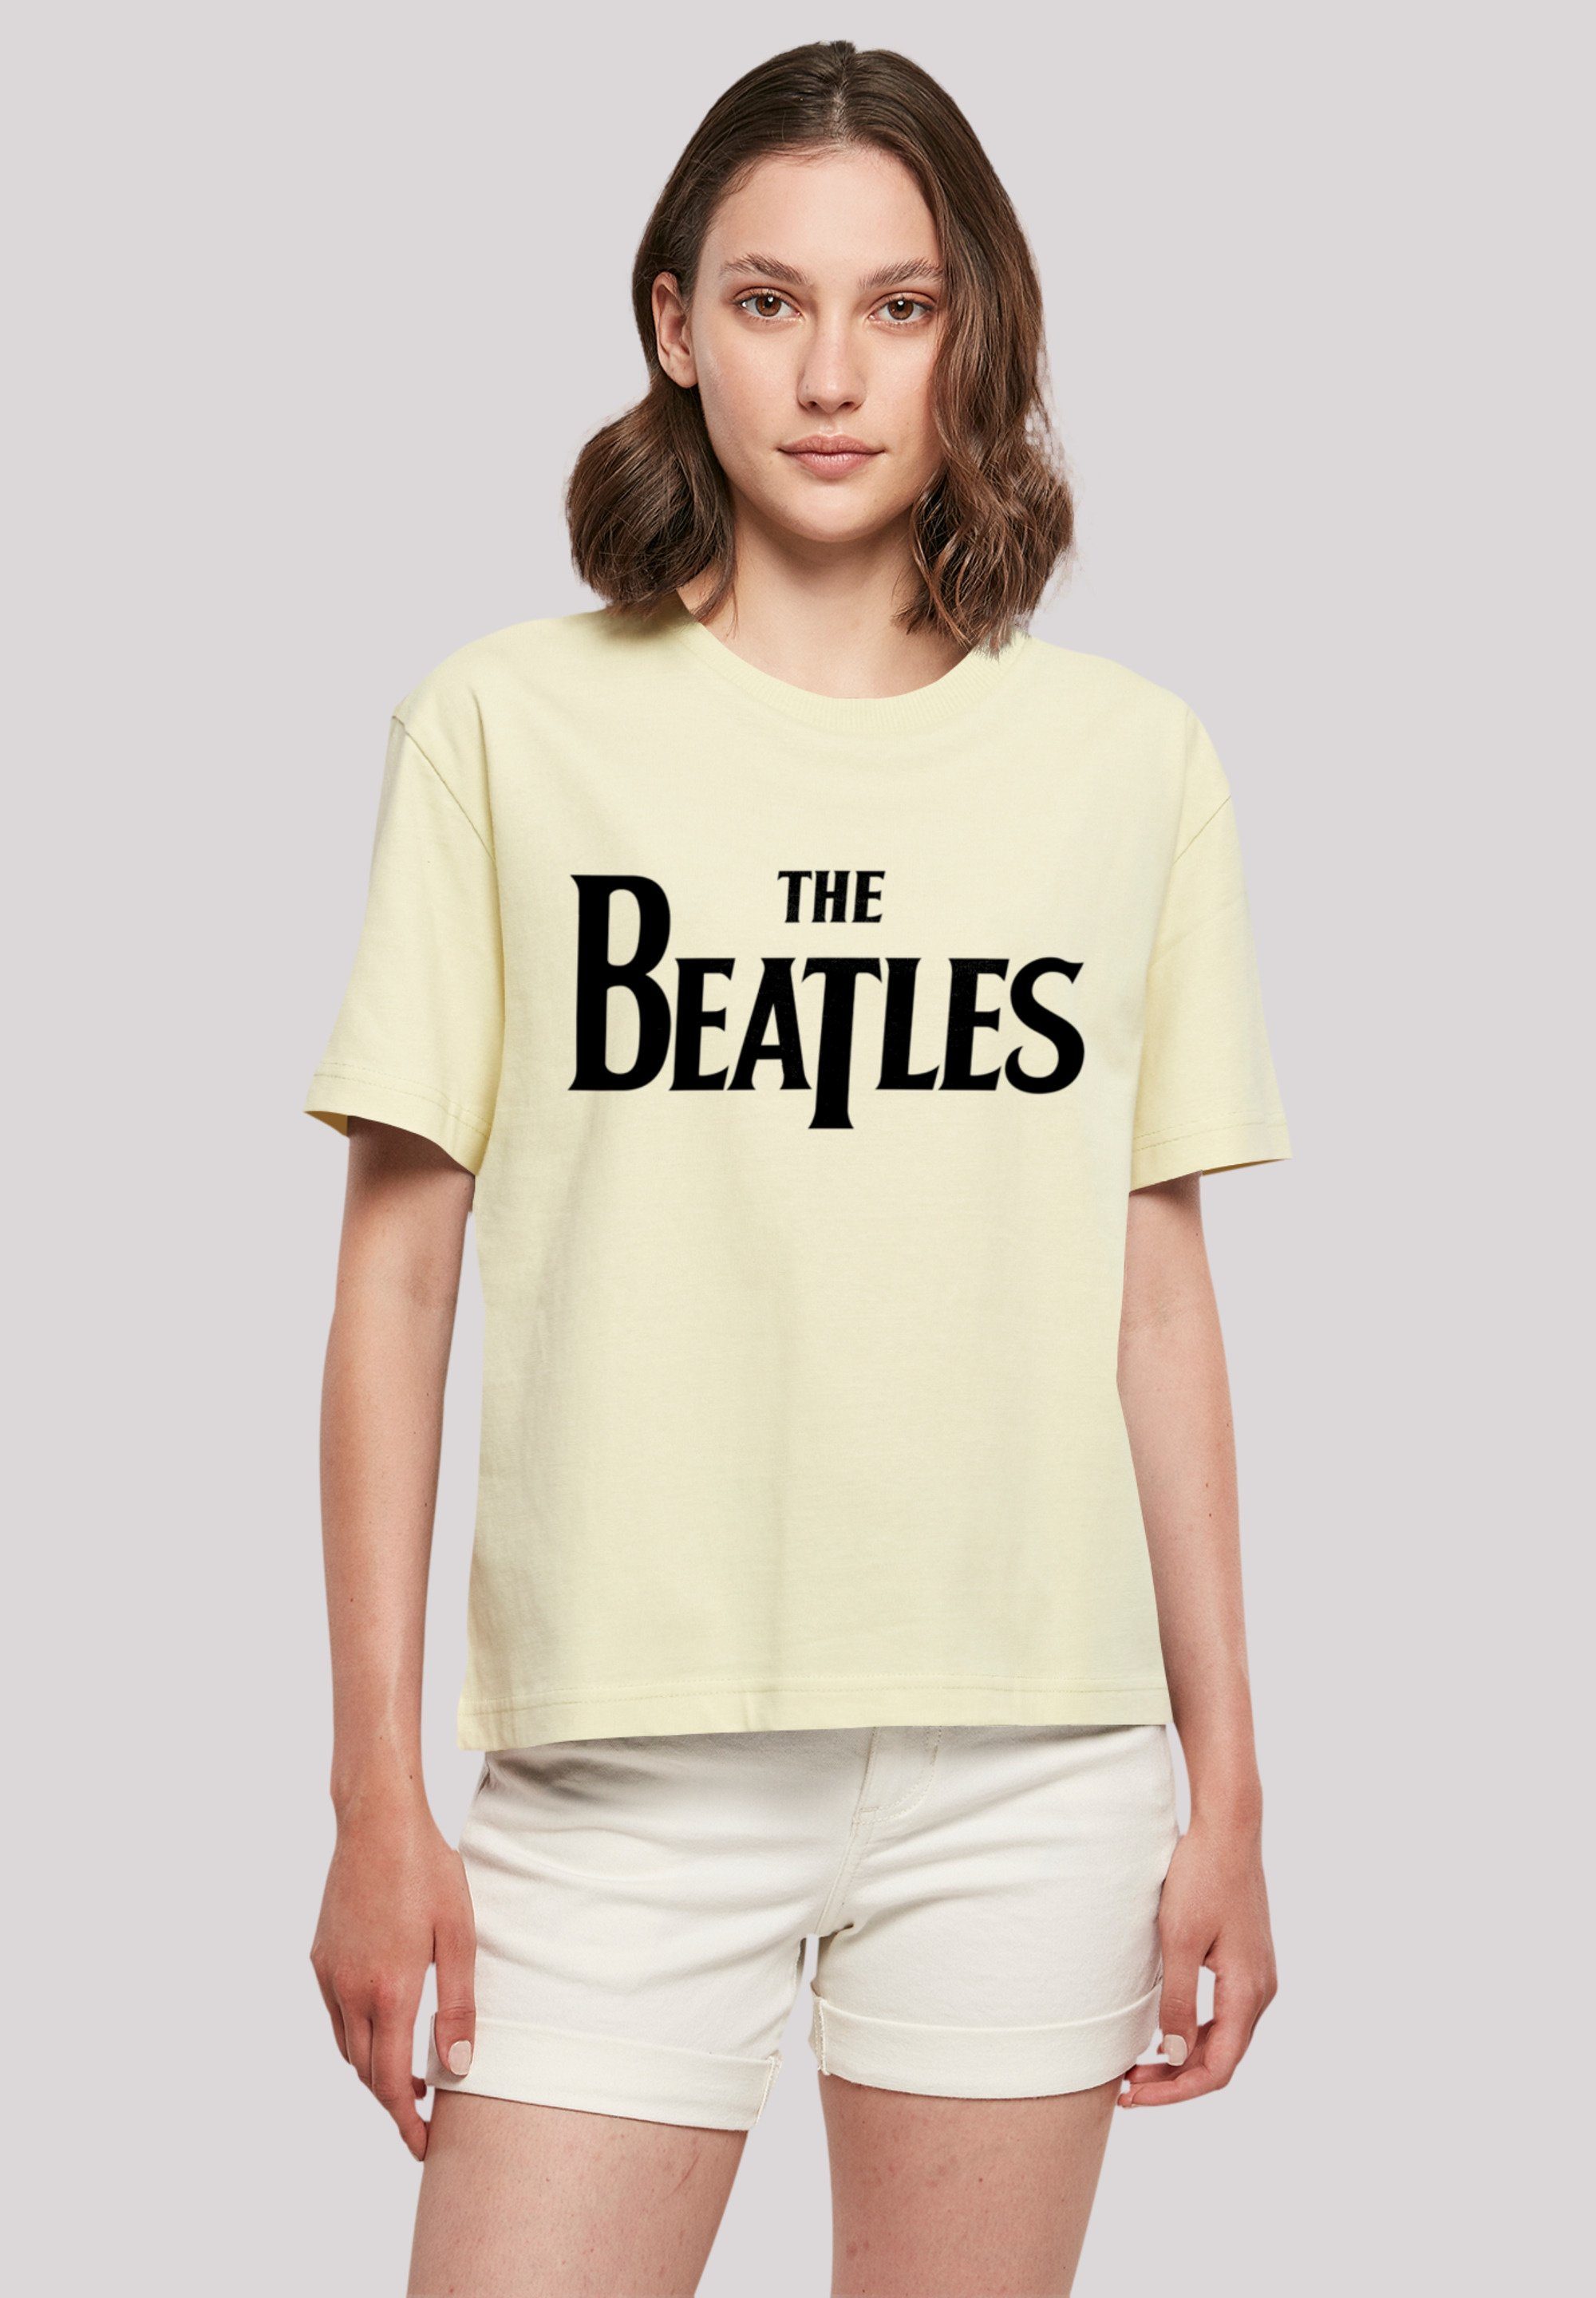 Größe Print, eine aus, T-Shirt Logo weit Fällt F4NT4STIC kleiner Beatles The bitte bestellen